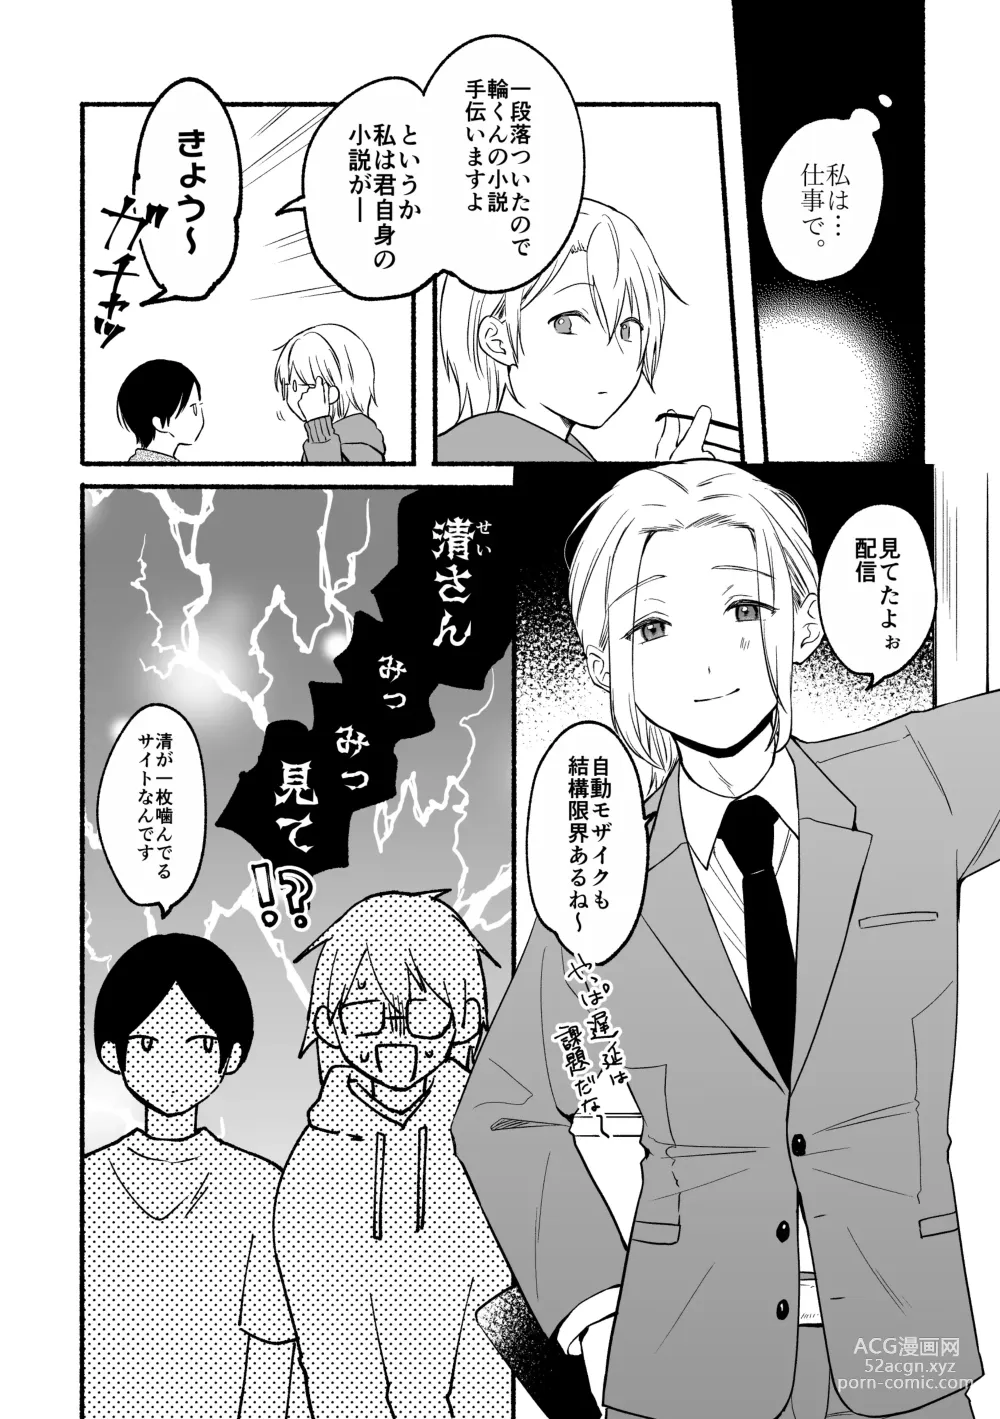 Page 26 of doujinshi Seijinkou Mangakka, Hamedori Haishin Ganbarimasu.